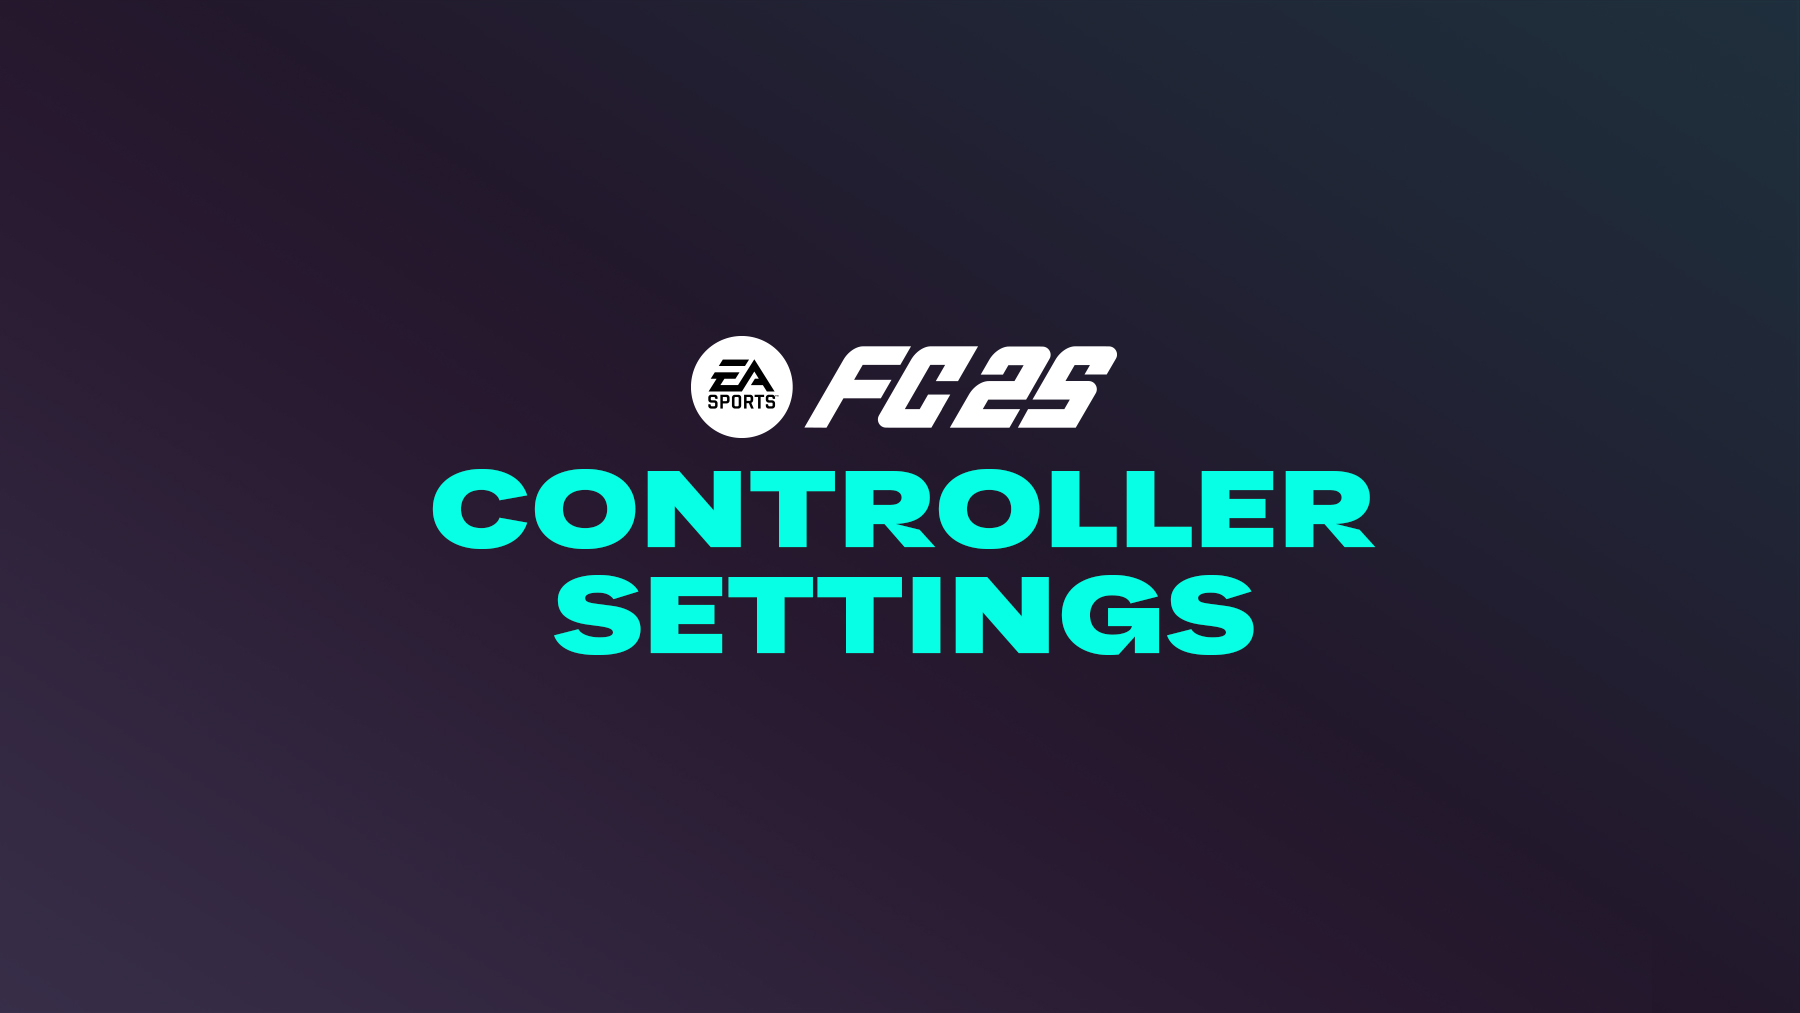 FC 25 Custom Controls